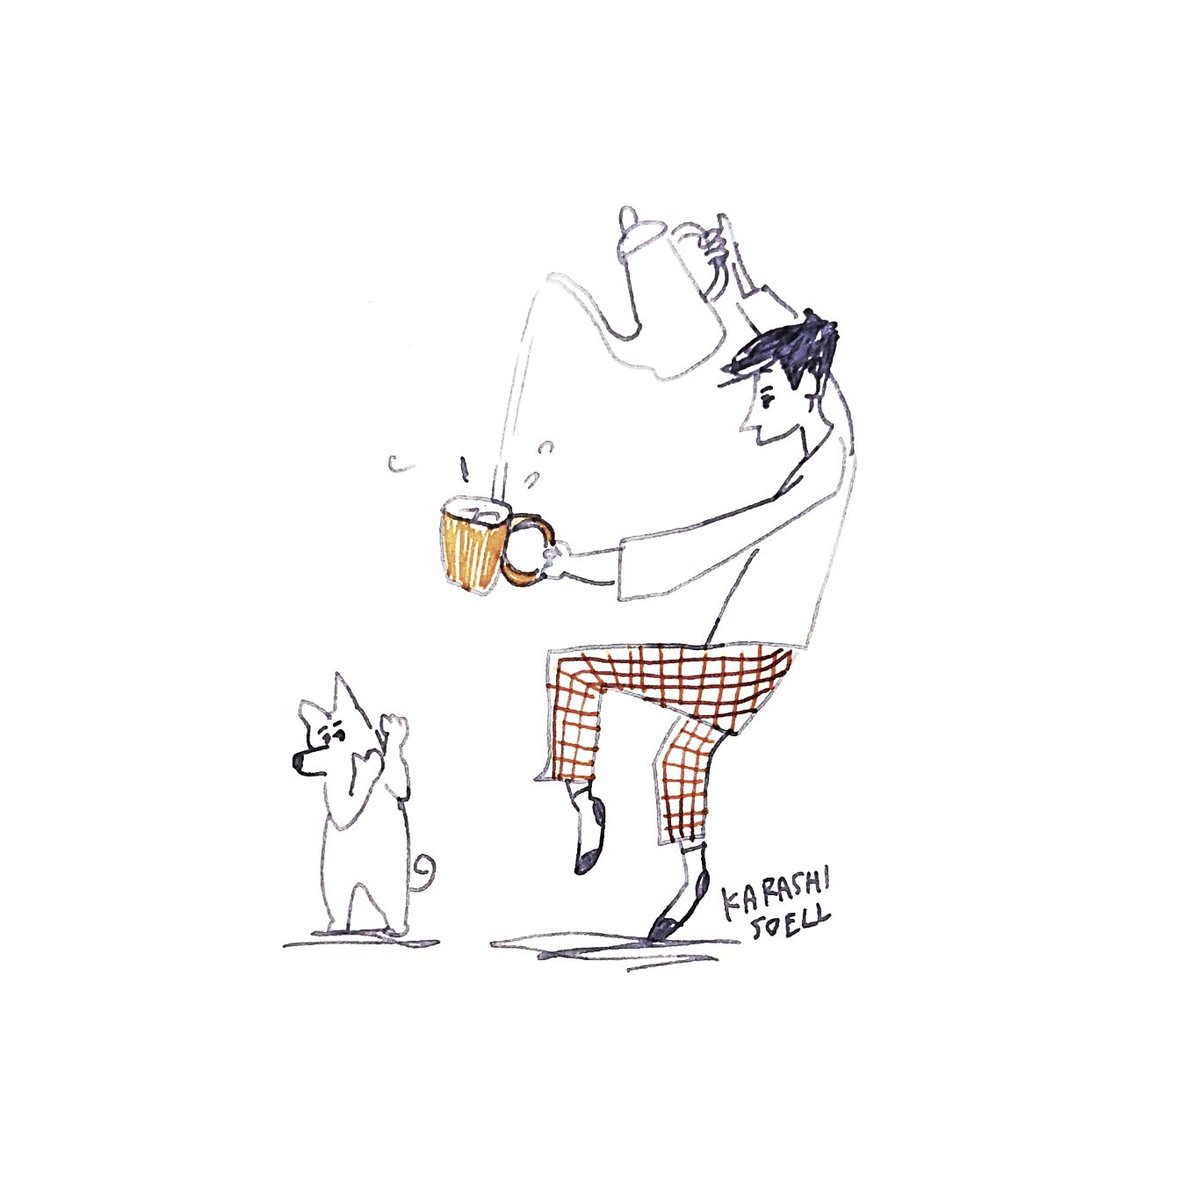 カラシソエル イラストレーター على تويتر 今日のイラスト お湯を注ぐ少年と犬 今日のカラシイラスト